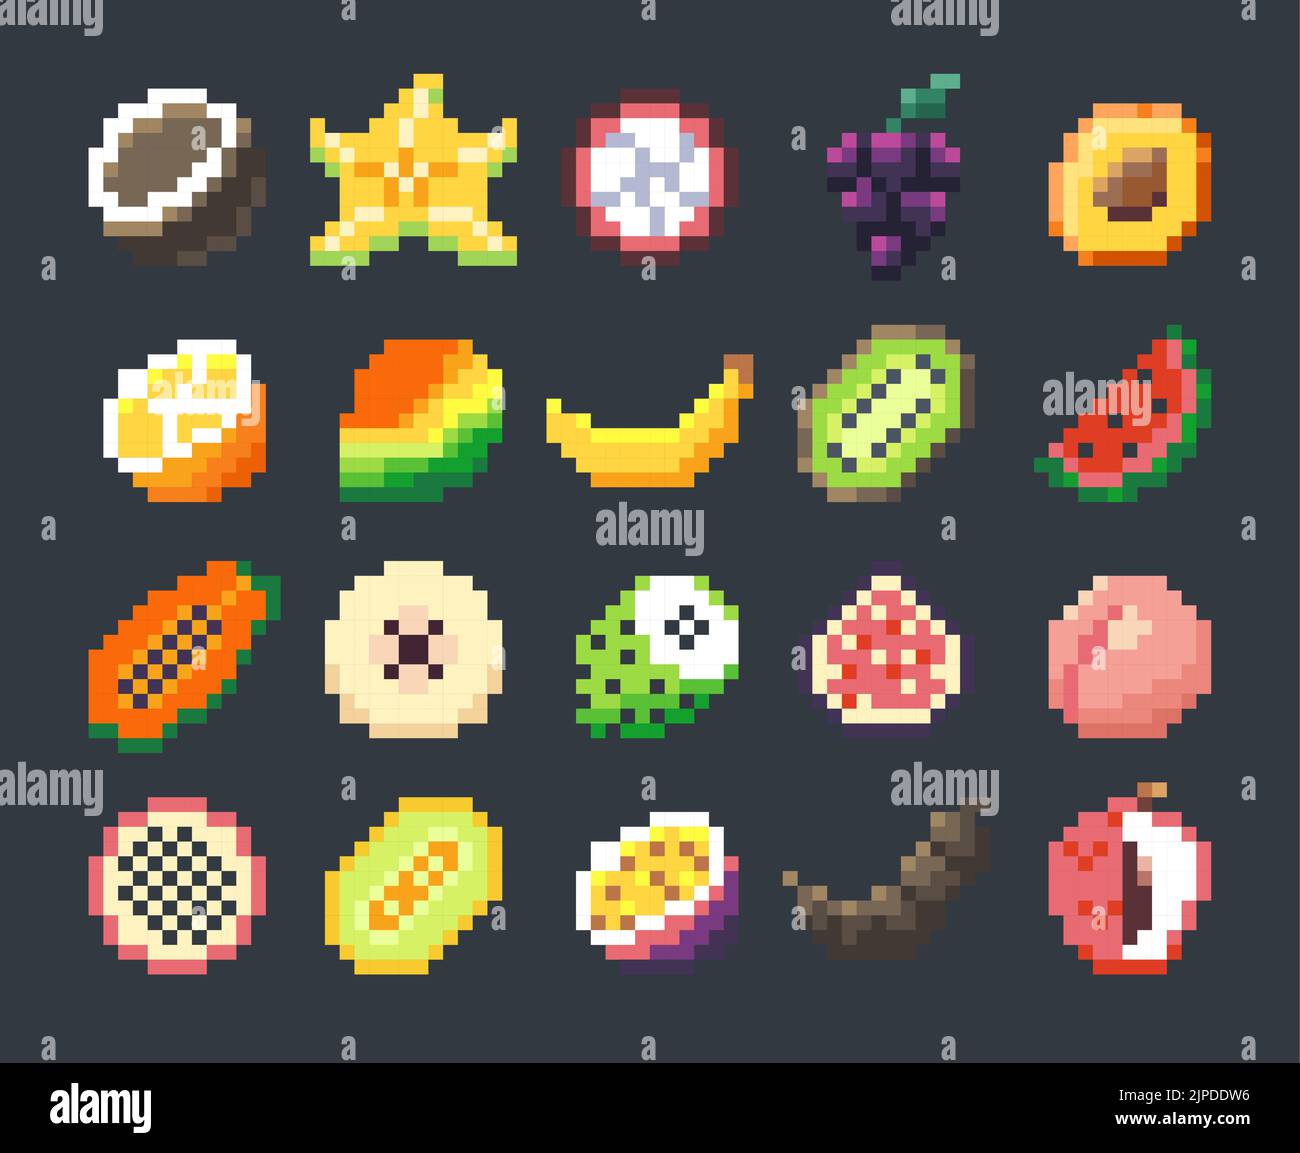 Pixel frutas exóticas. Dibujos animados iconos de frutas estilizadas para juegos en 2D, juego gráfico de sprite de 8 bits activo, juego y desarrollo de aplicaciones móviles. Conjunto de vectores Ilustración del Vector